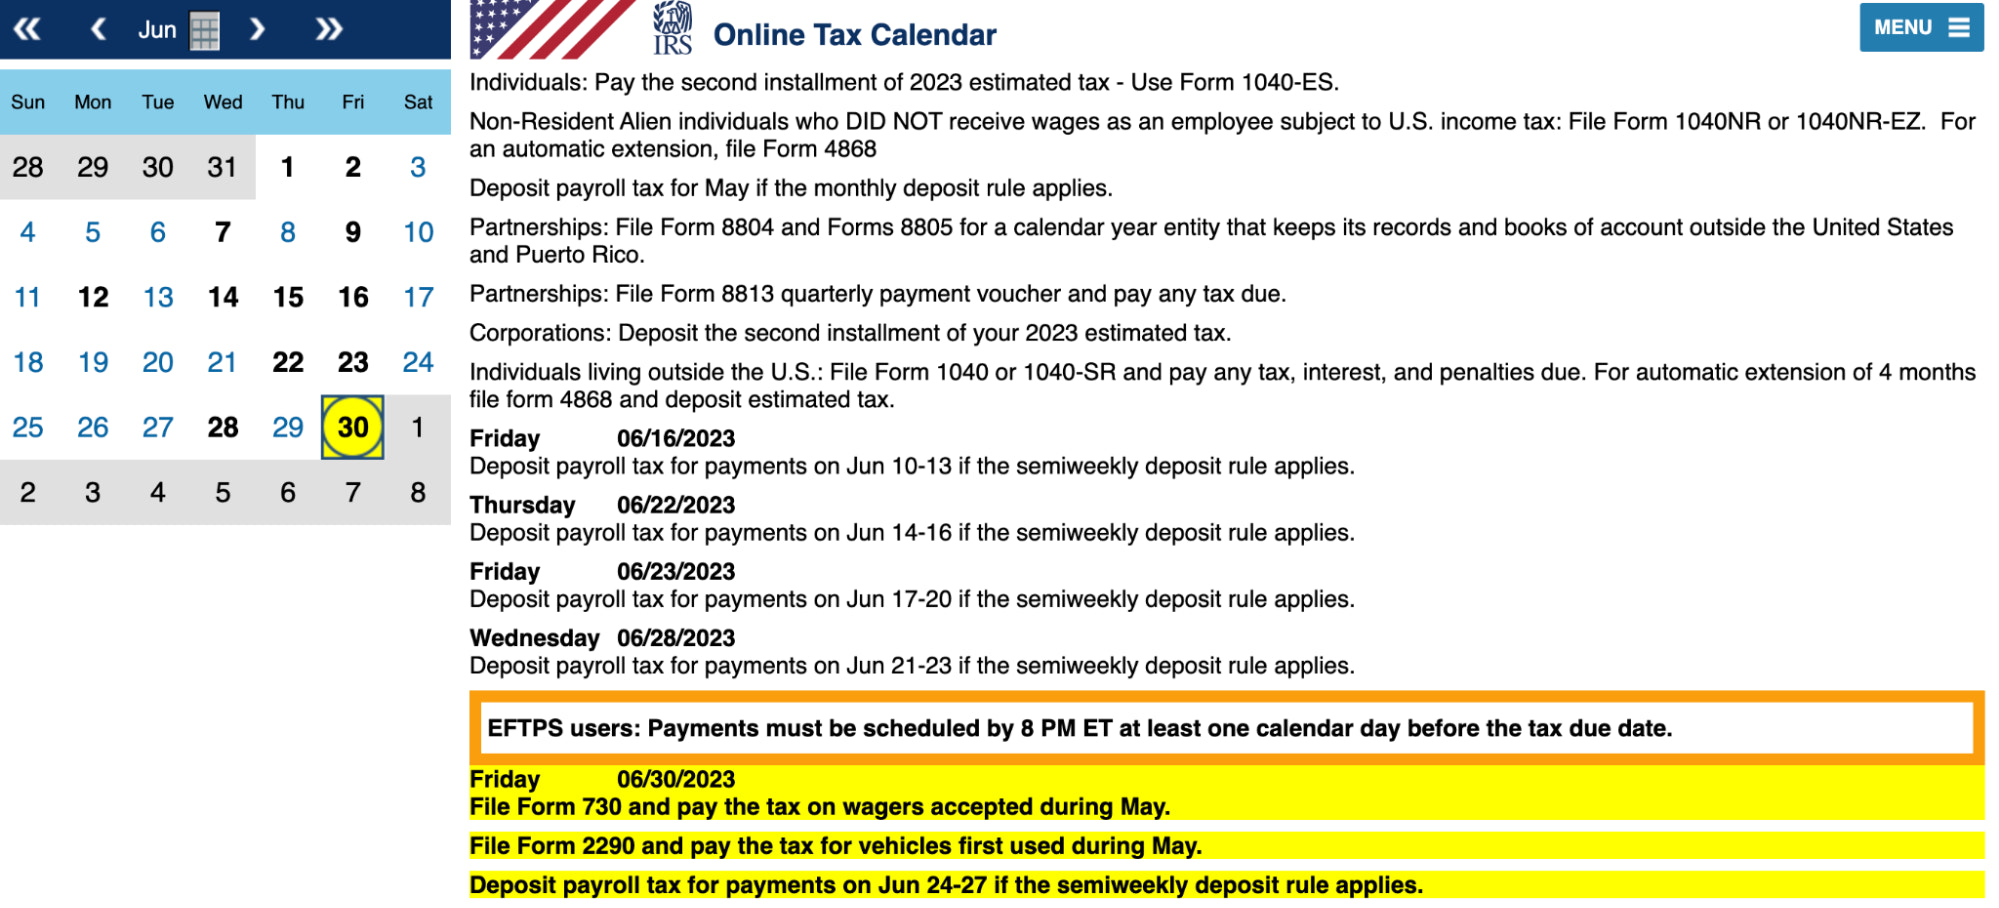 国税局在线税务日历，带有网格和重要日期